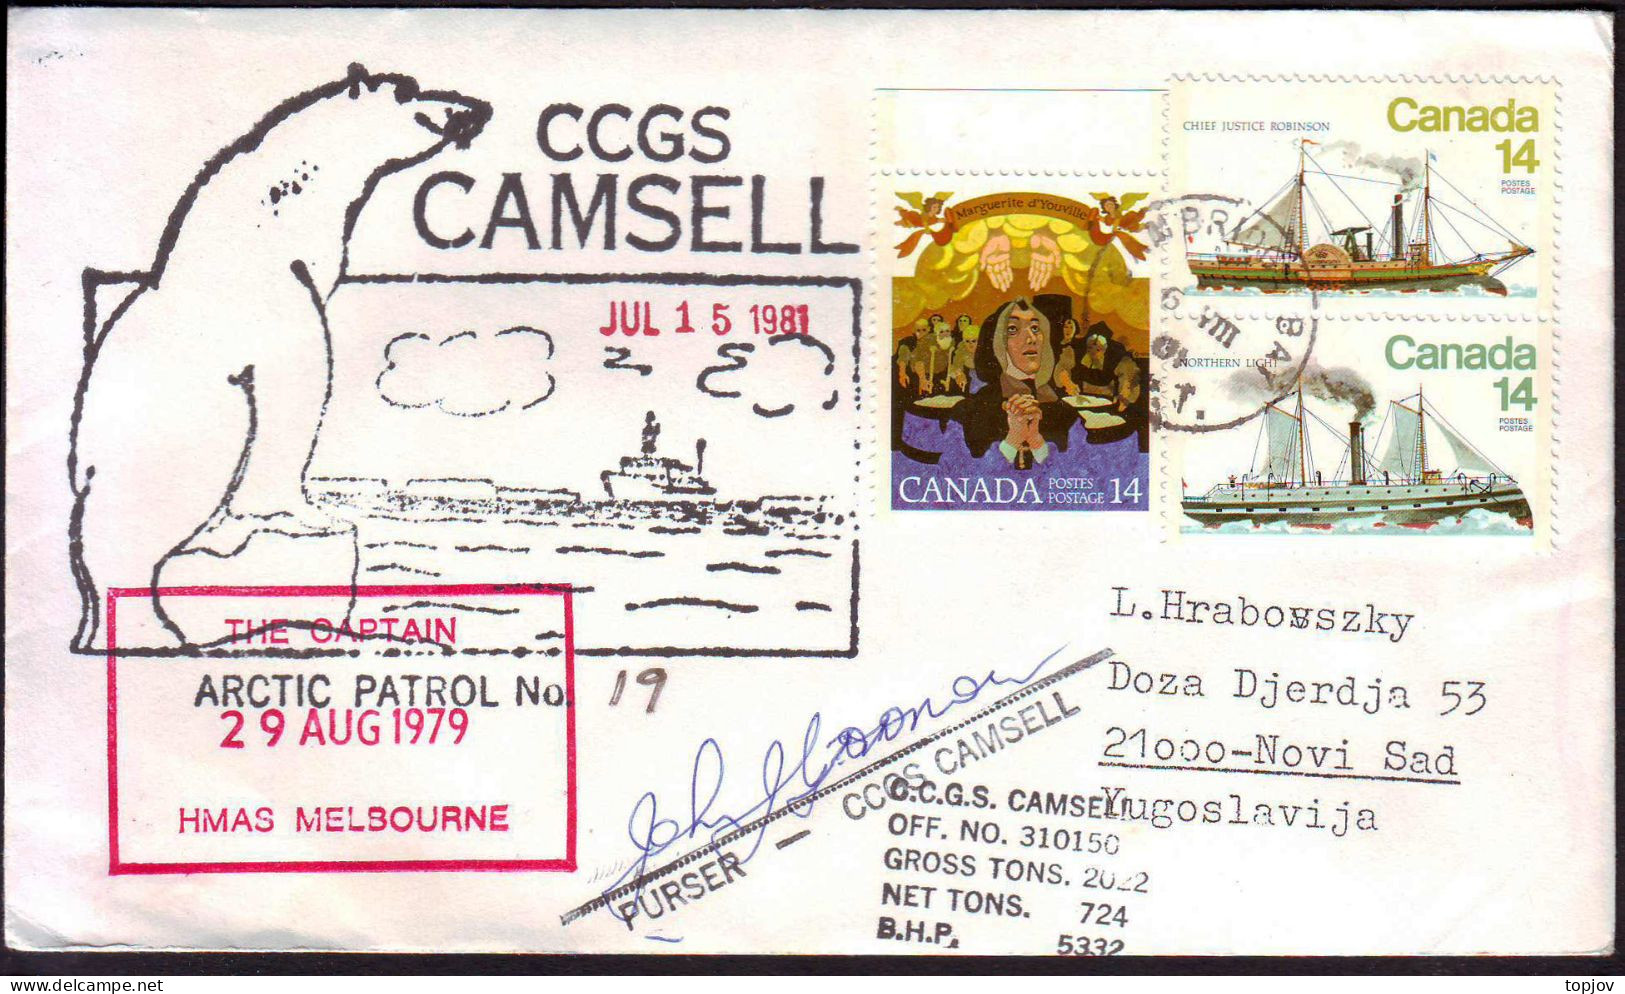 CANADA - CCGS  CAMSELL - ARCTIC PATROL  No.19 - 1979 - Expéditions Arctiques